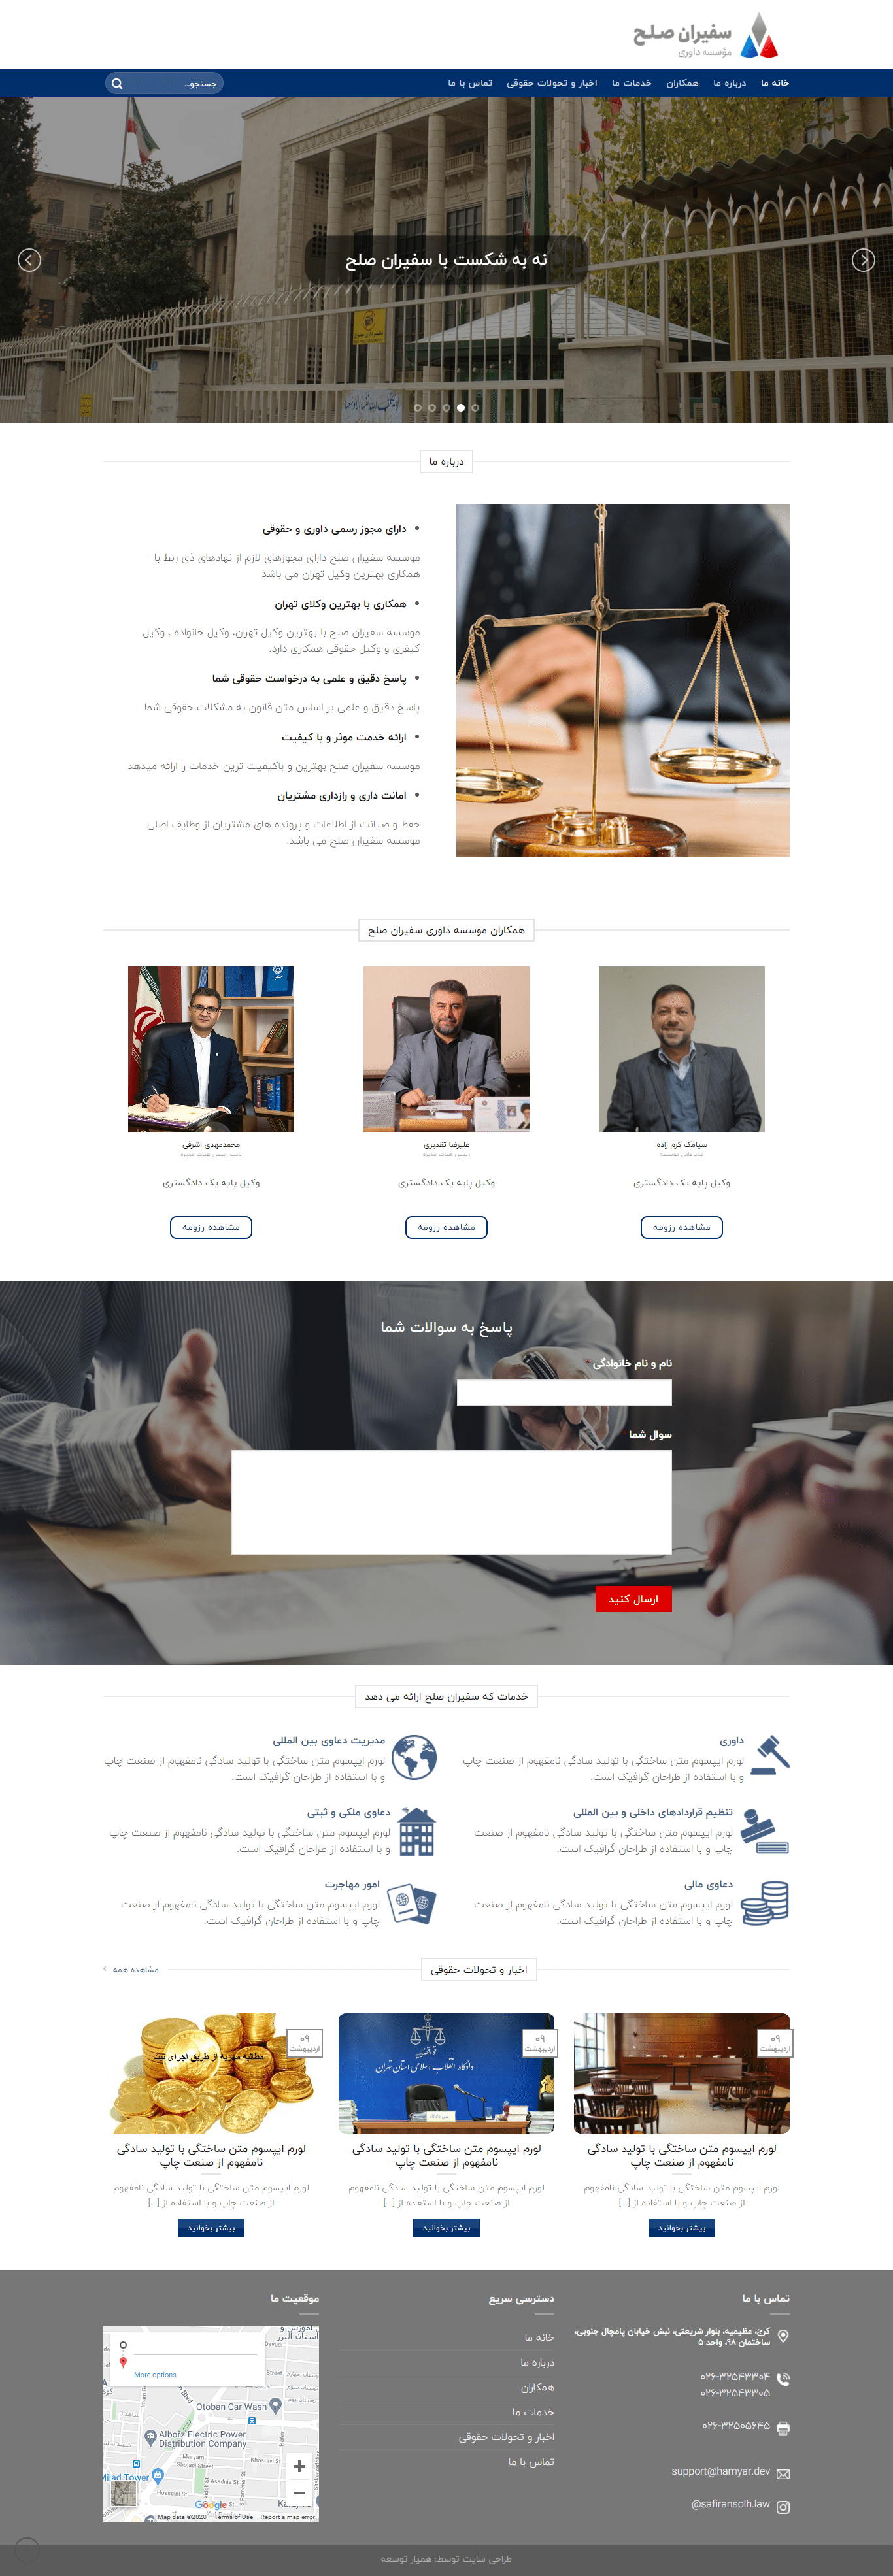 طراحی سایت شرکتی موسسه داوری سفیران صلح